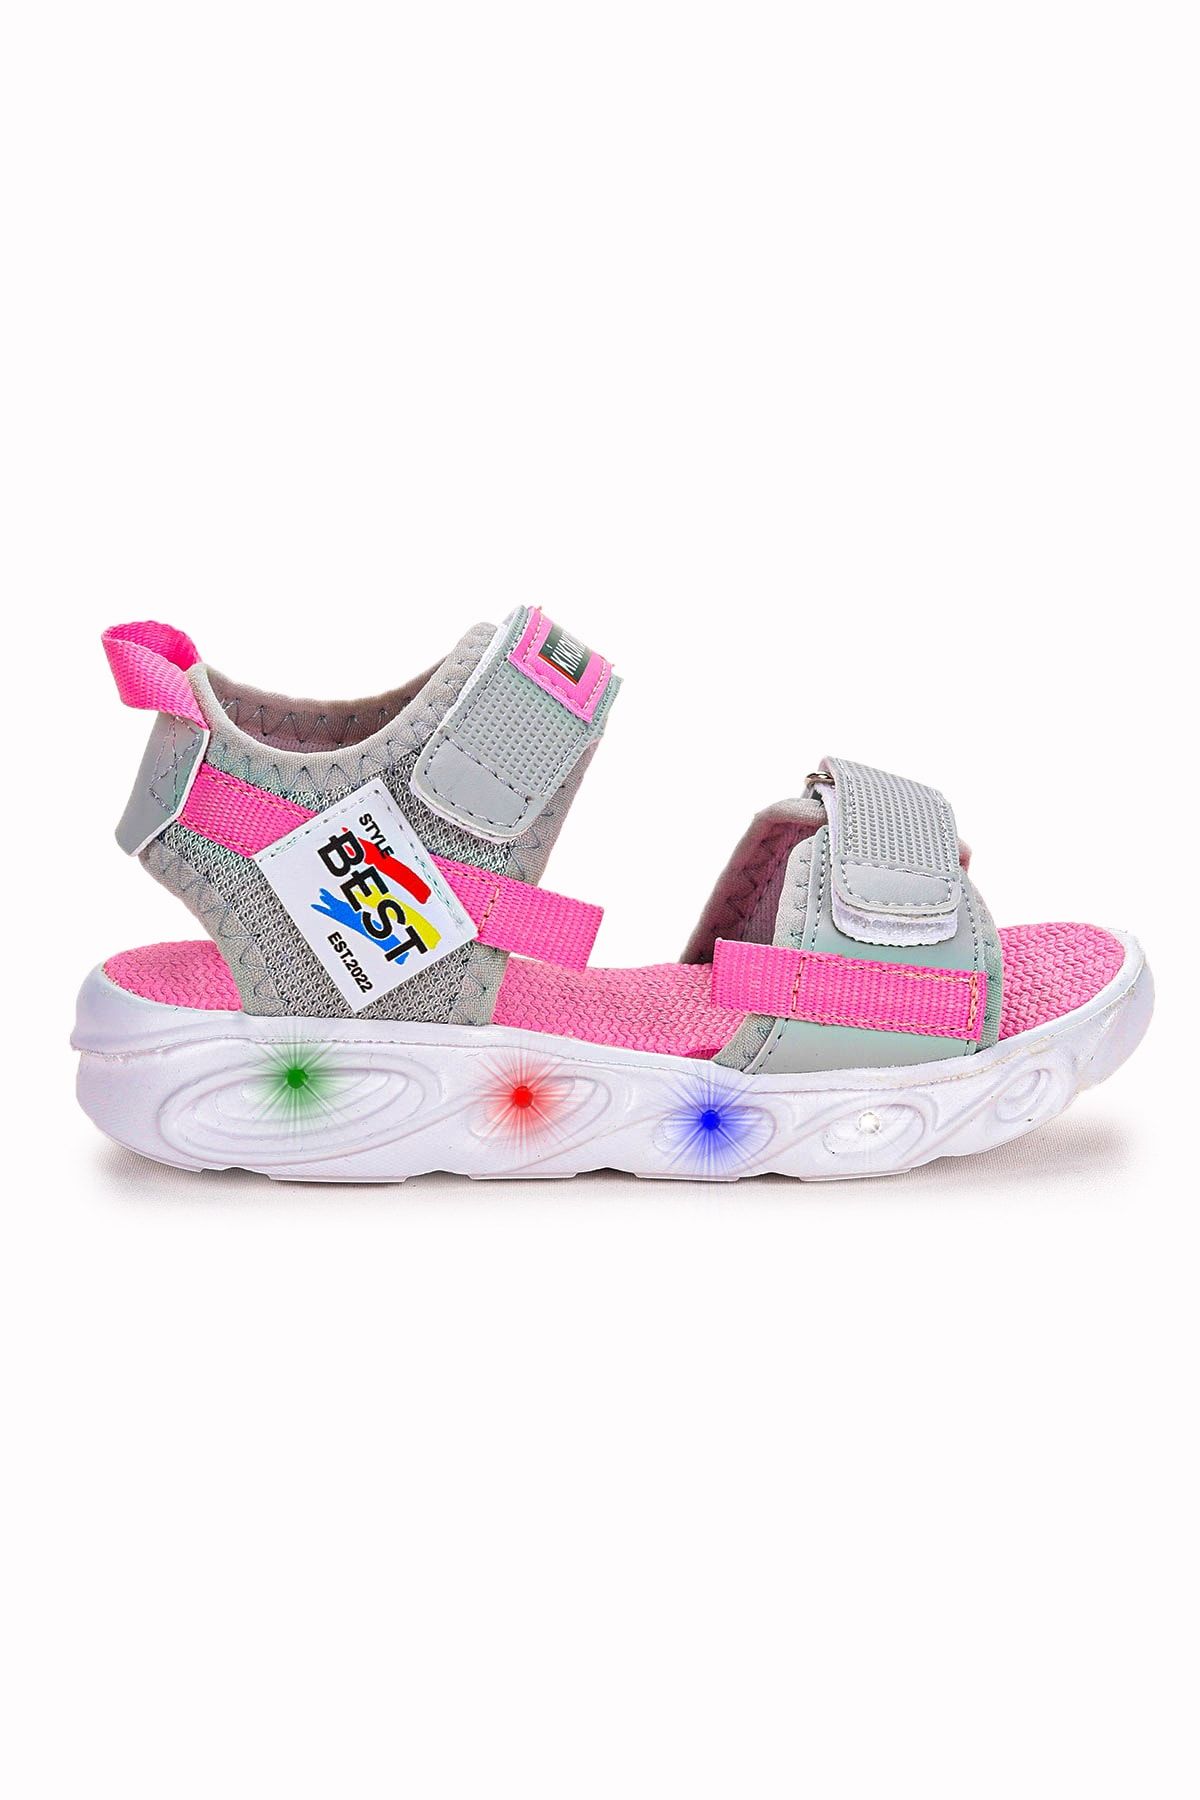 Kiko Kids 100 Işıklı Günlük Kız Çocuk Cırtlı Sandalet Ayakkabı